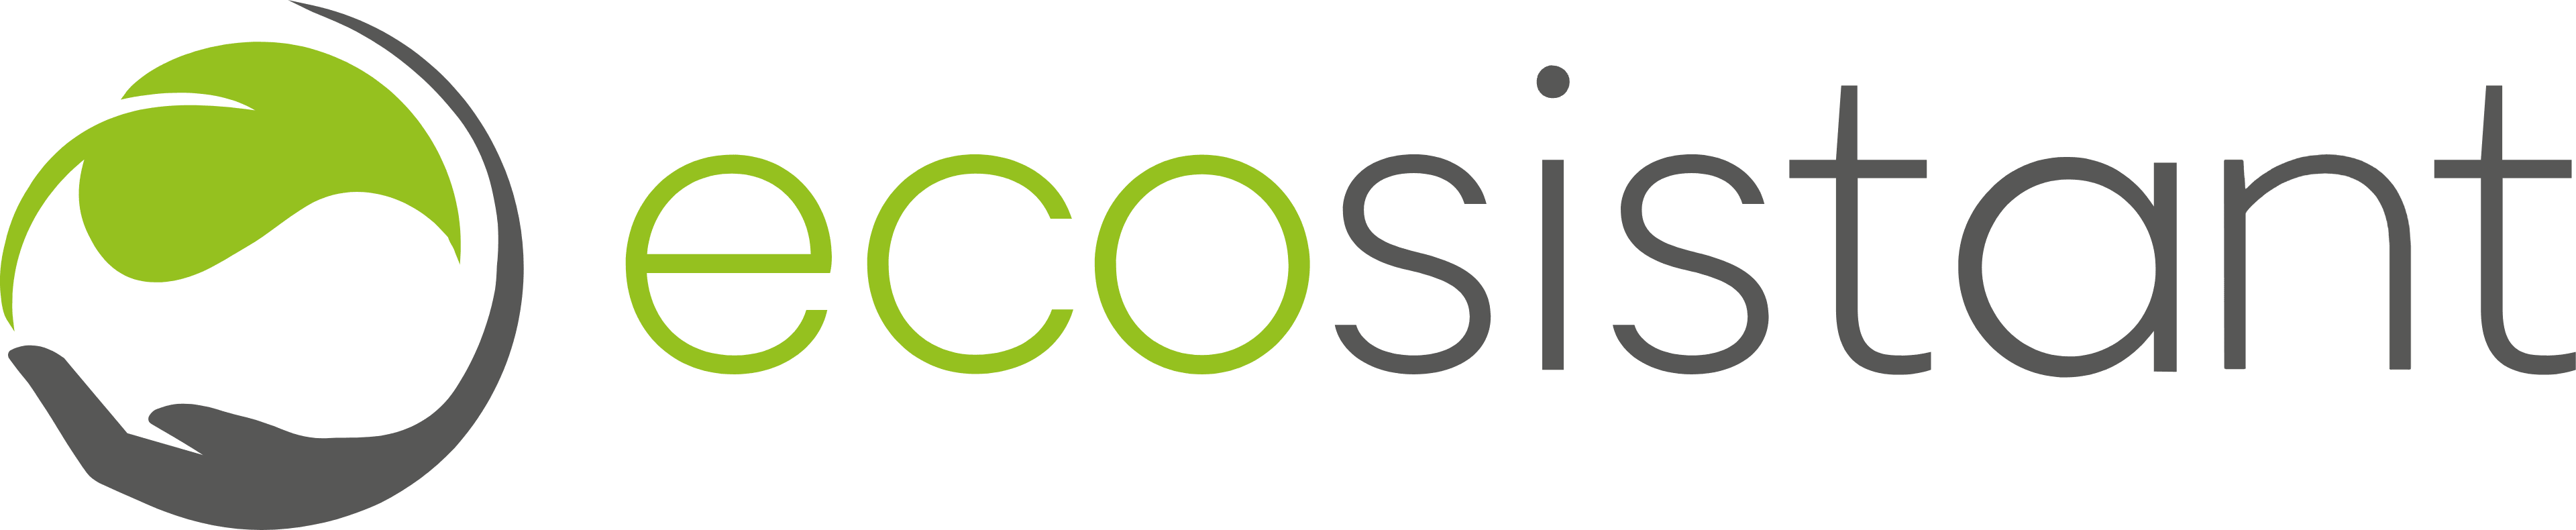 ecosistant GmbH logo